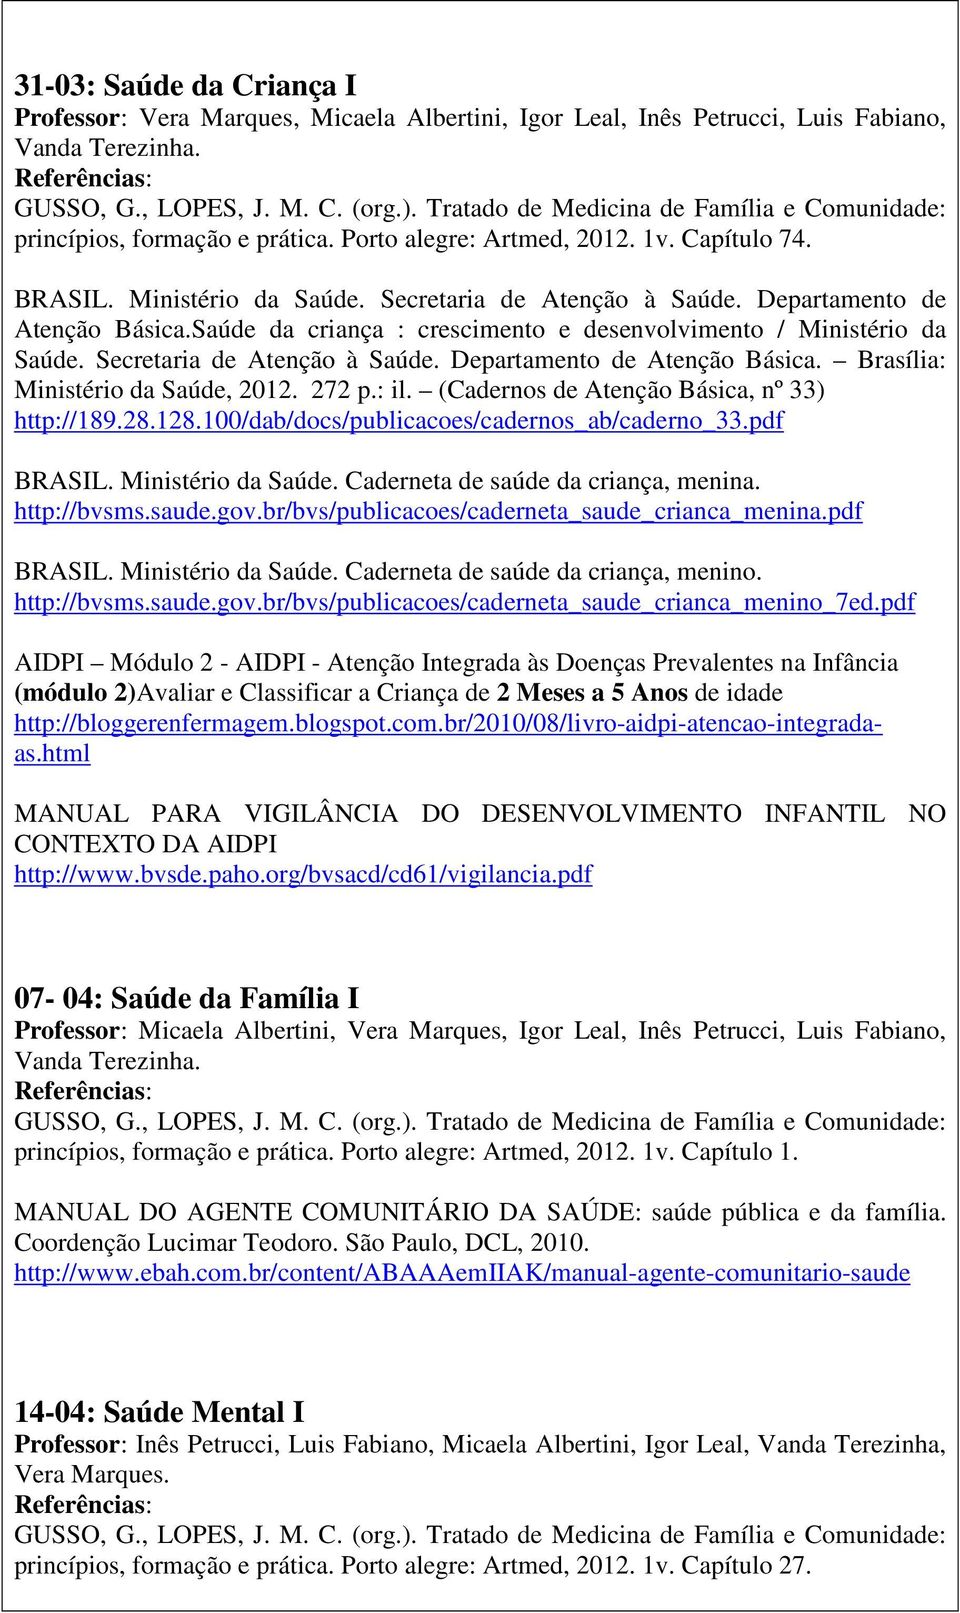 Secretaria de Atenção à Saúde. Departamento de Atenção Básica. Brasília: Ministério da Saúde, 2012. 272 p.: il. (Cadernos de Atenção Básica, nº 33) http://189.28.128.